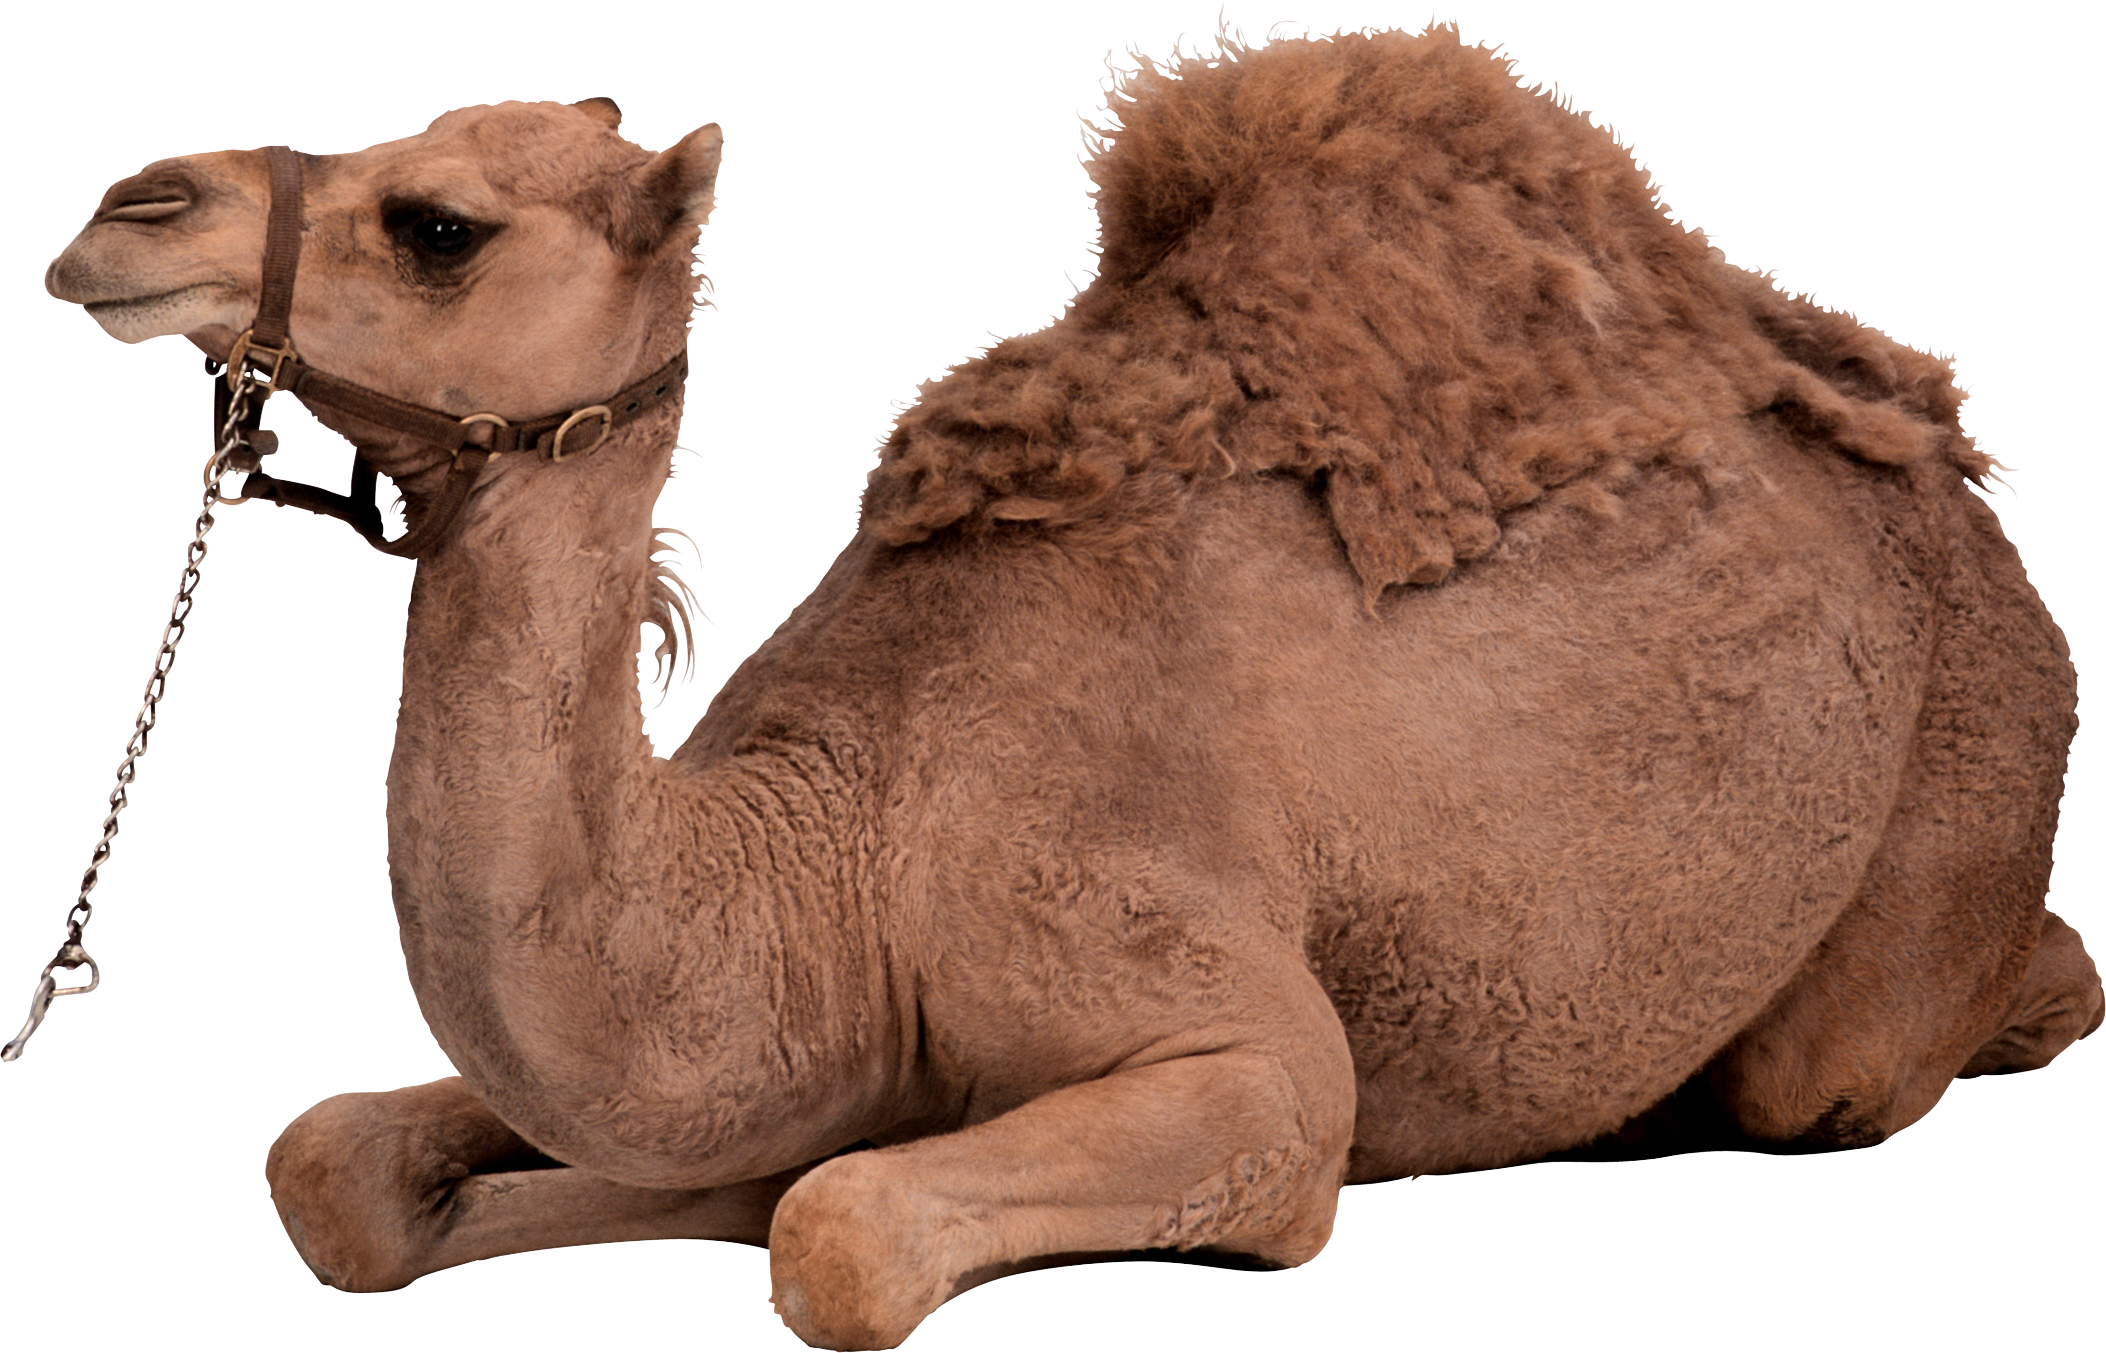 Desert camel sitting.